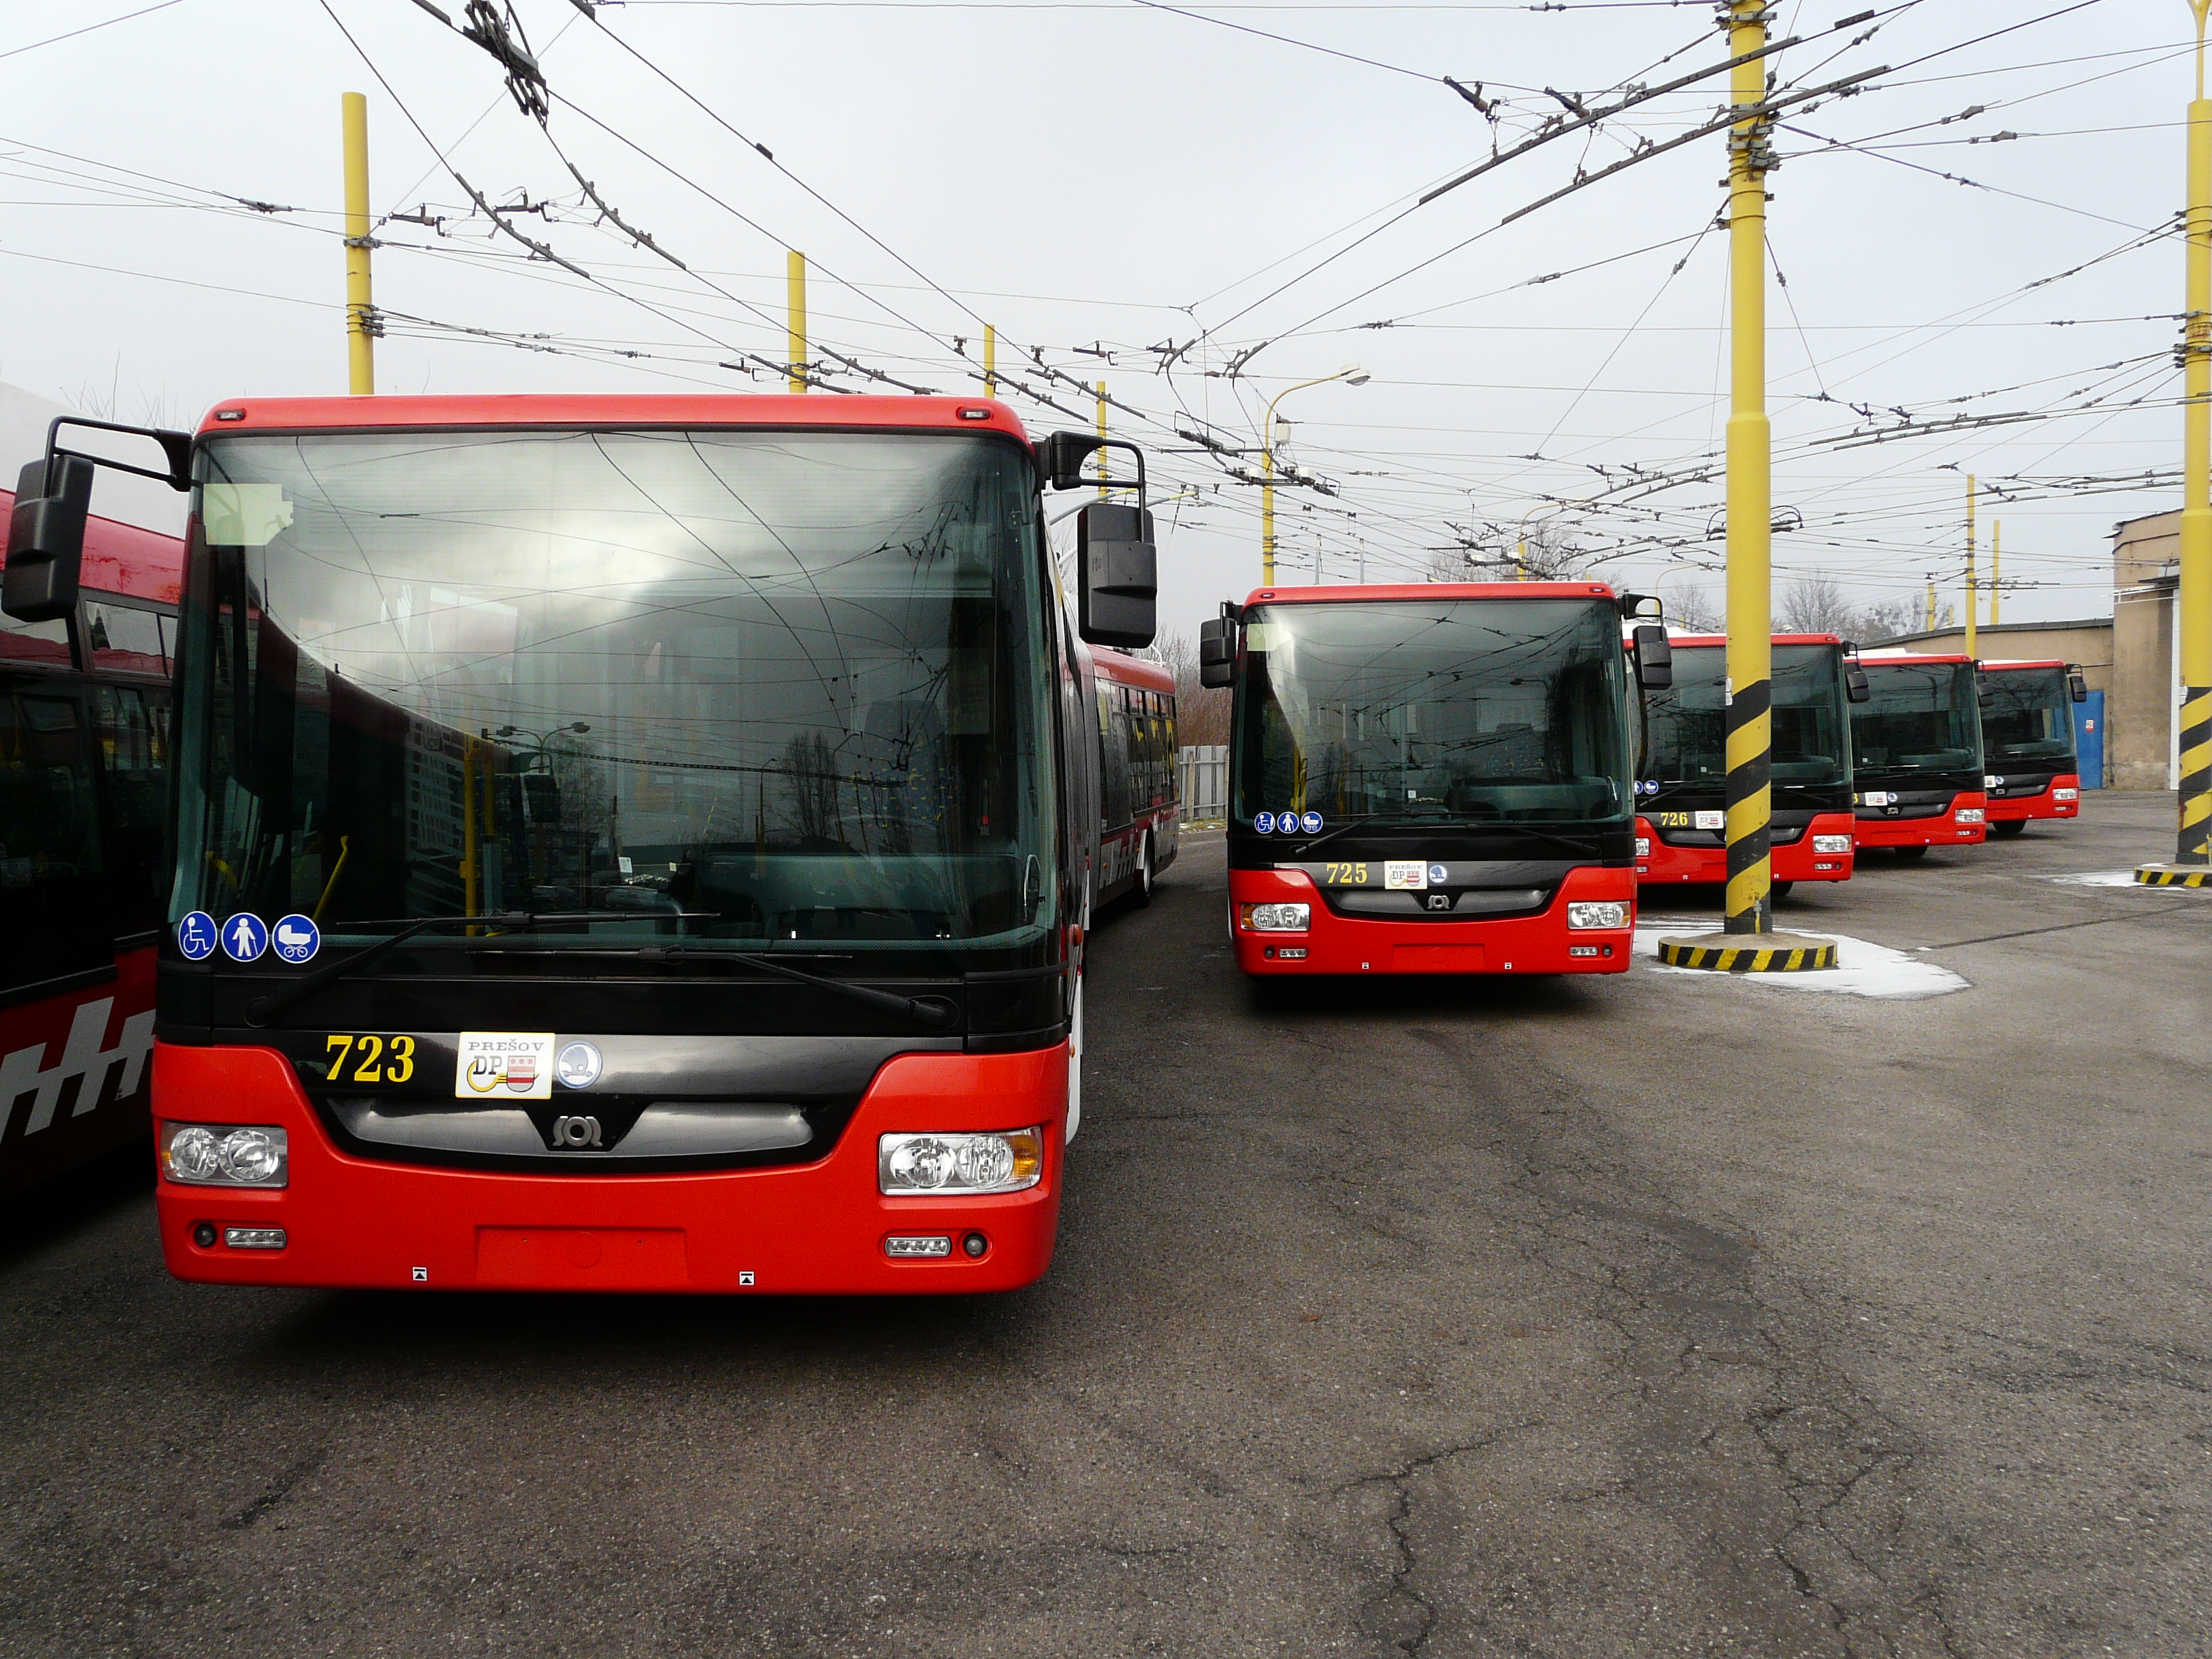 Trolejbusy v Prešove